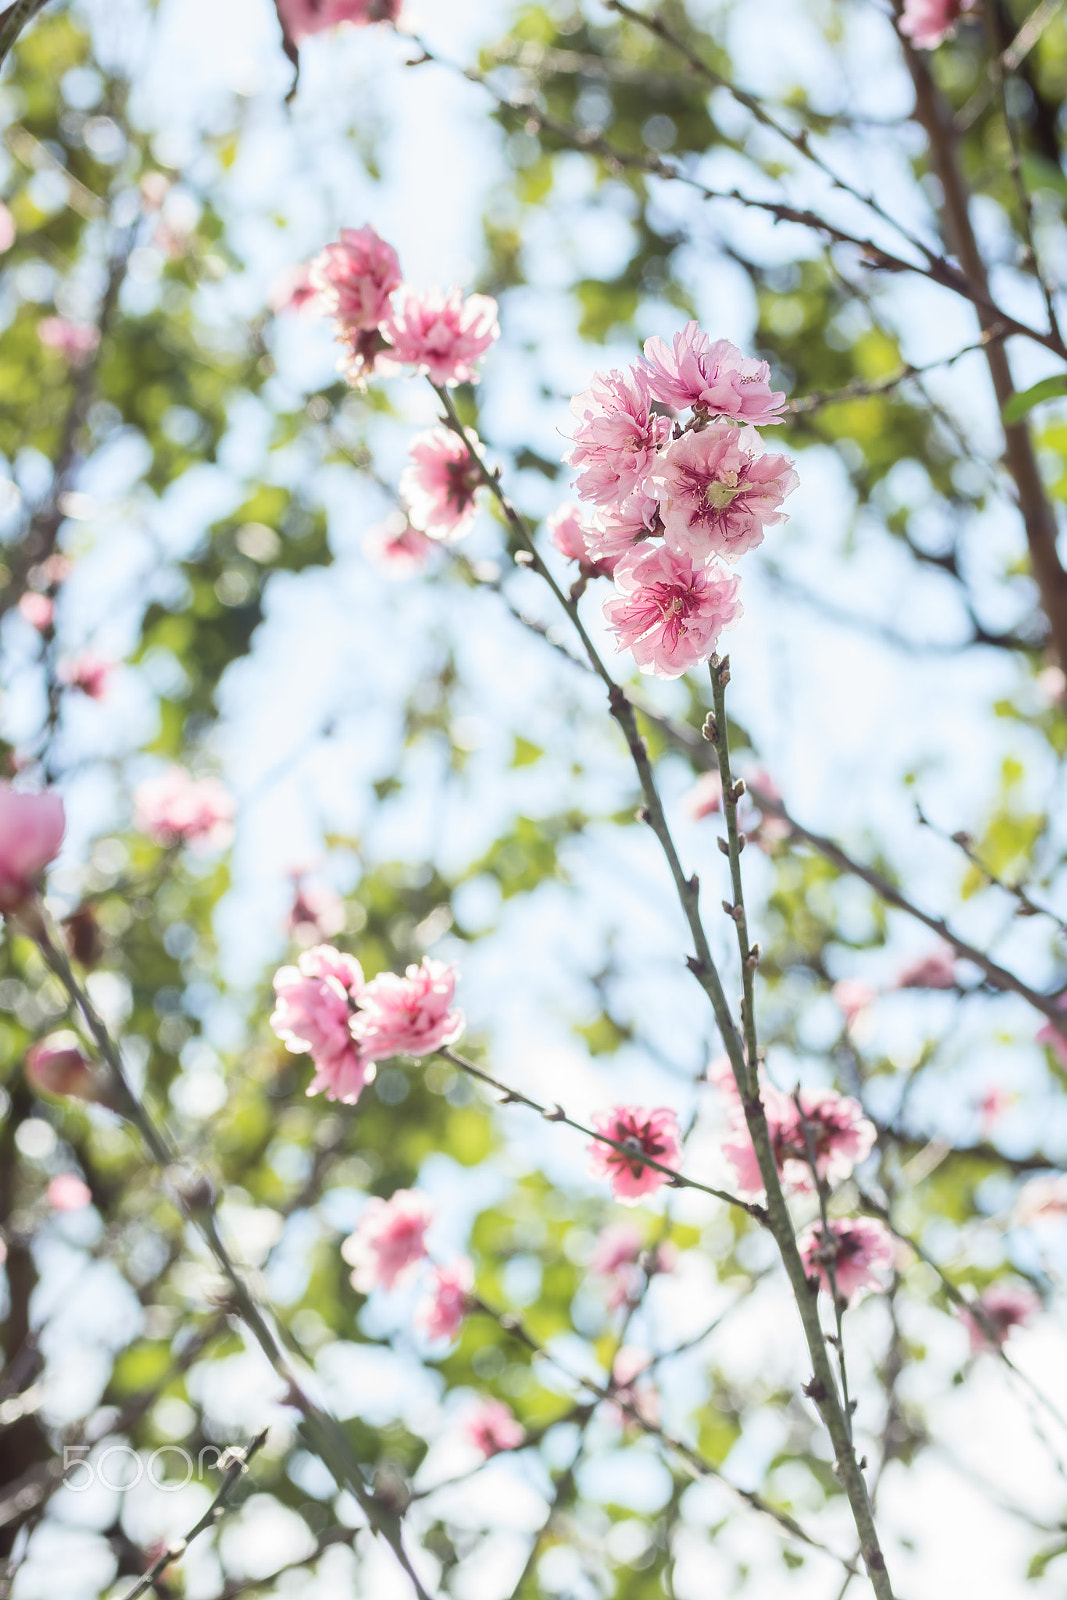 Sony SLT-A77 + MACRO 50mm F2.8 sample photo. Beautiful sakura blossom photography